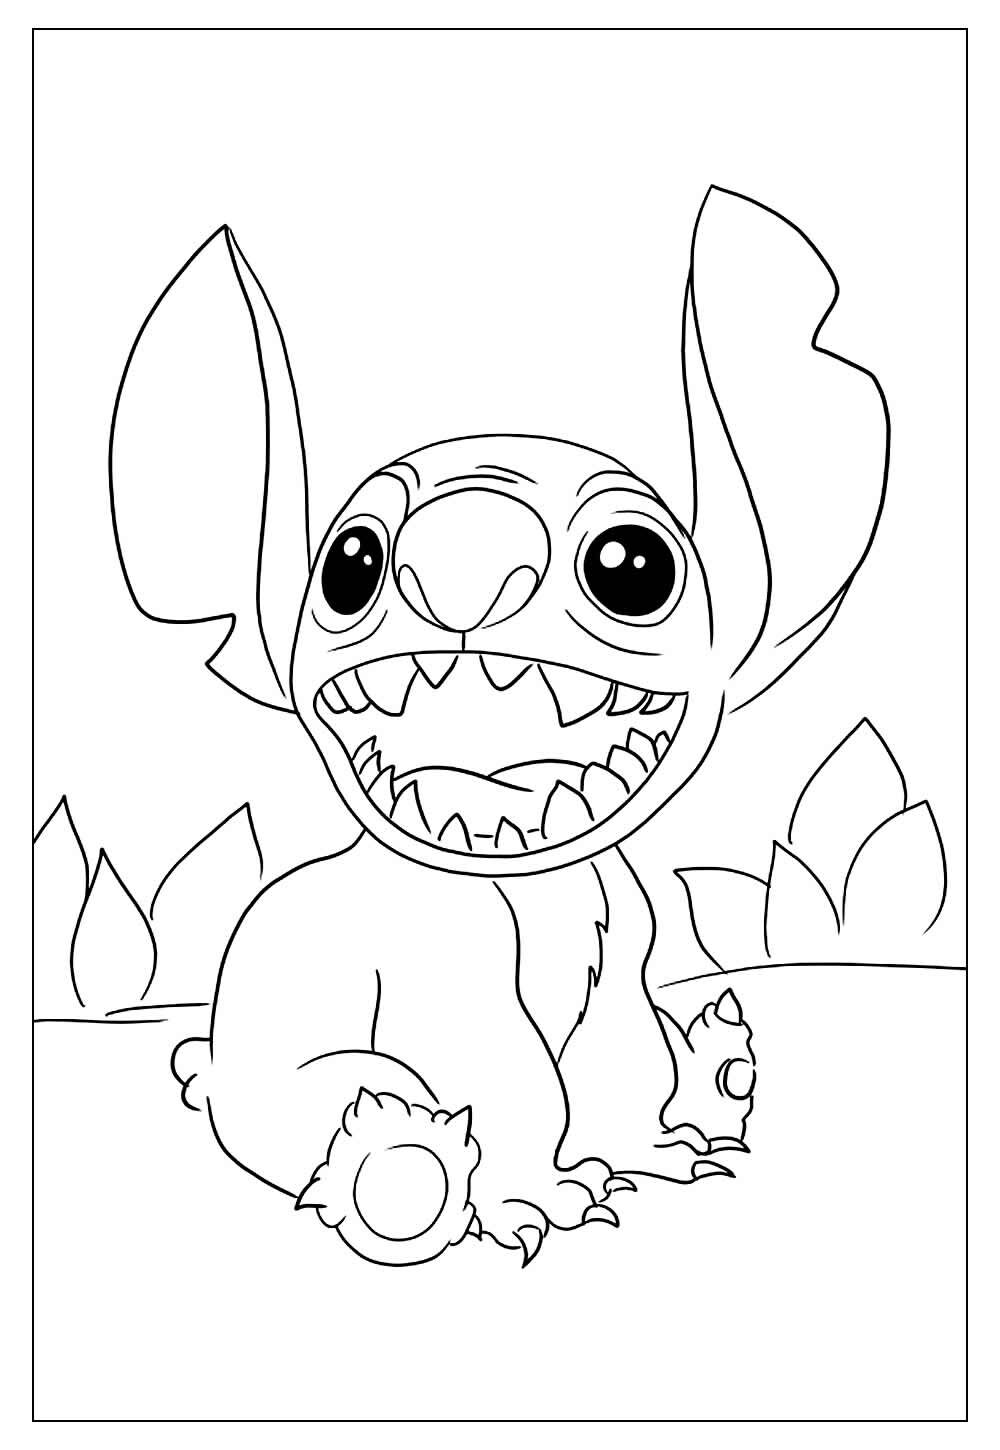 100 Mais Desenhos Tumblr Stitch - Imagens Para Colorir 1D8